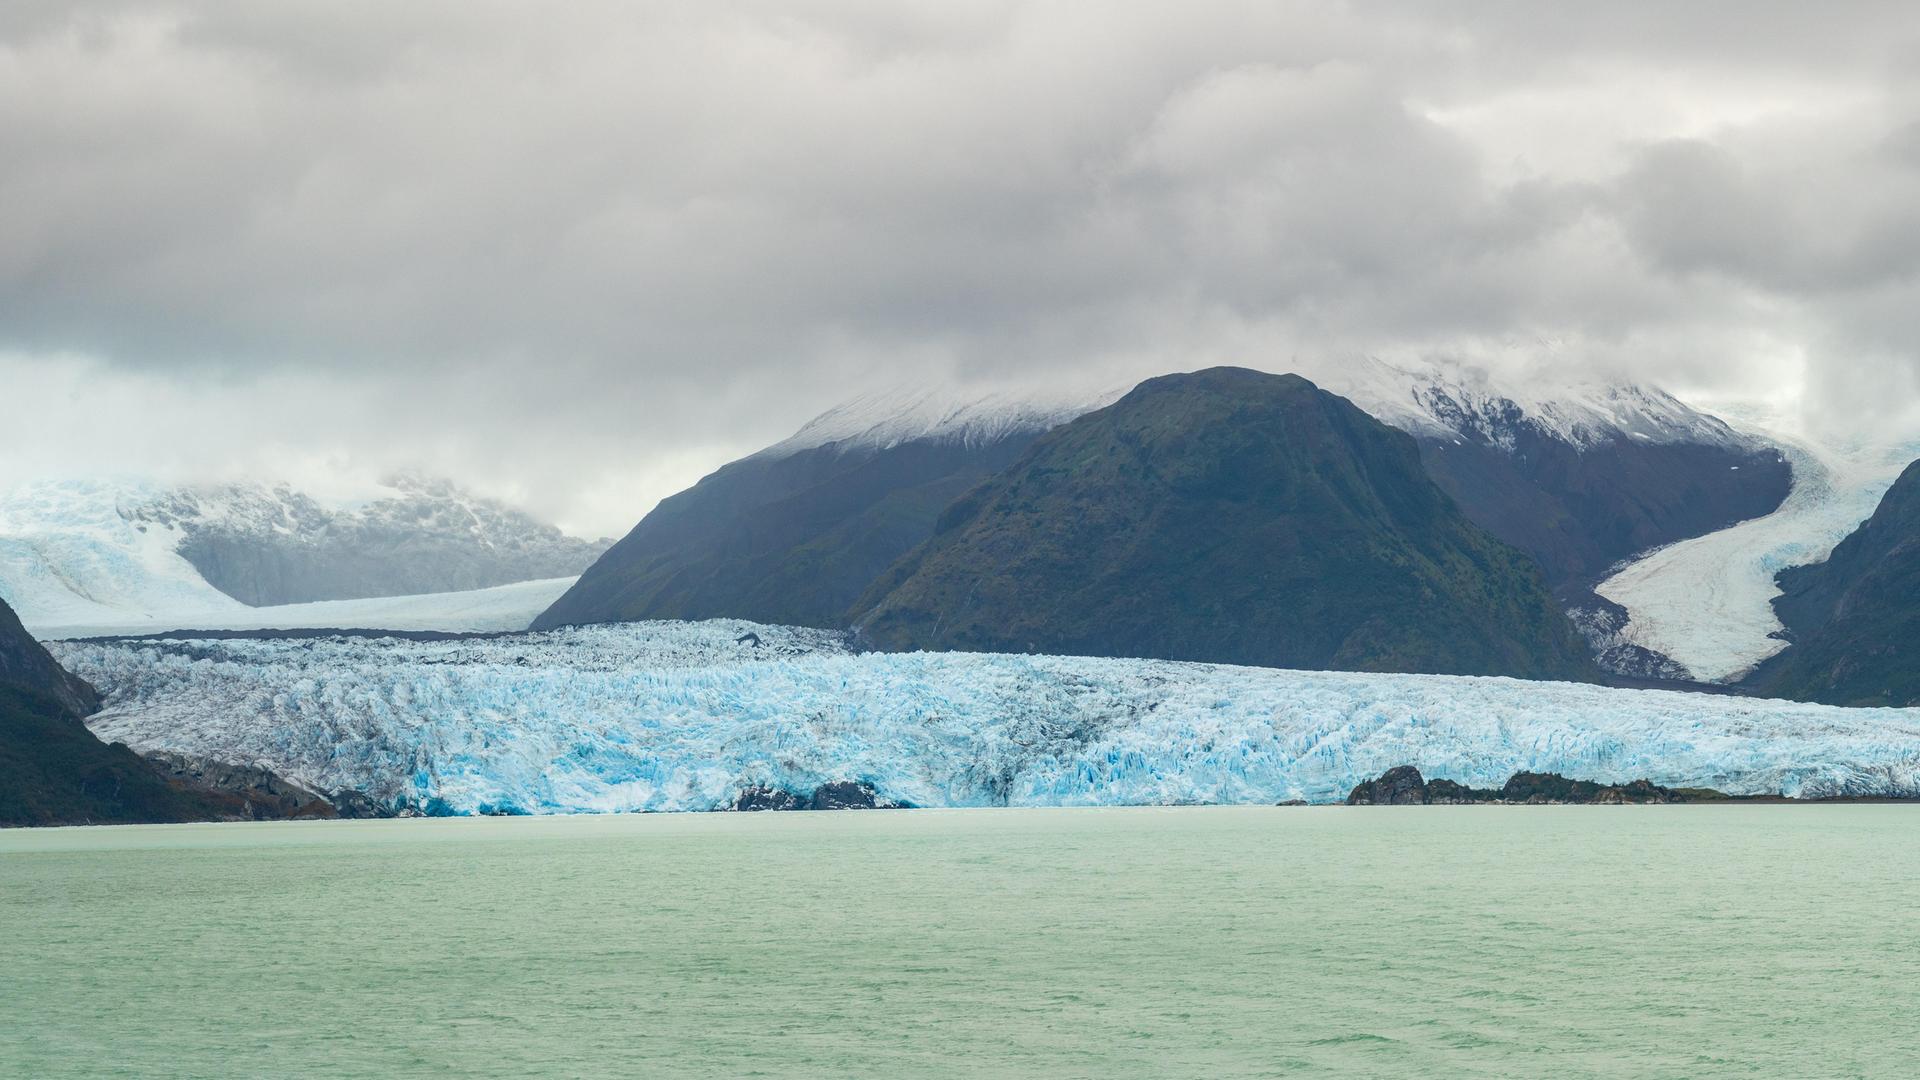 Sicht auf den Amalia Gletscher in Chile und den davor liegenden Gletschersee